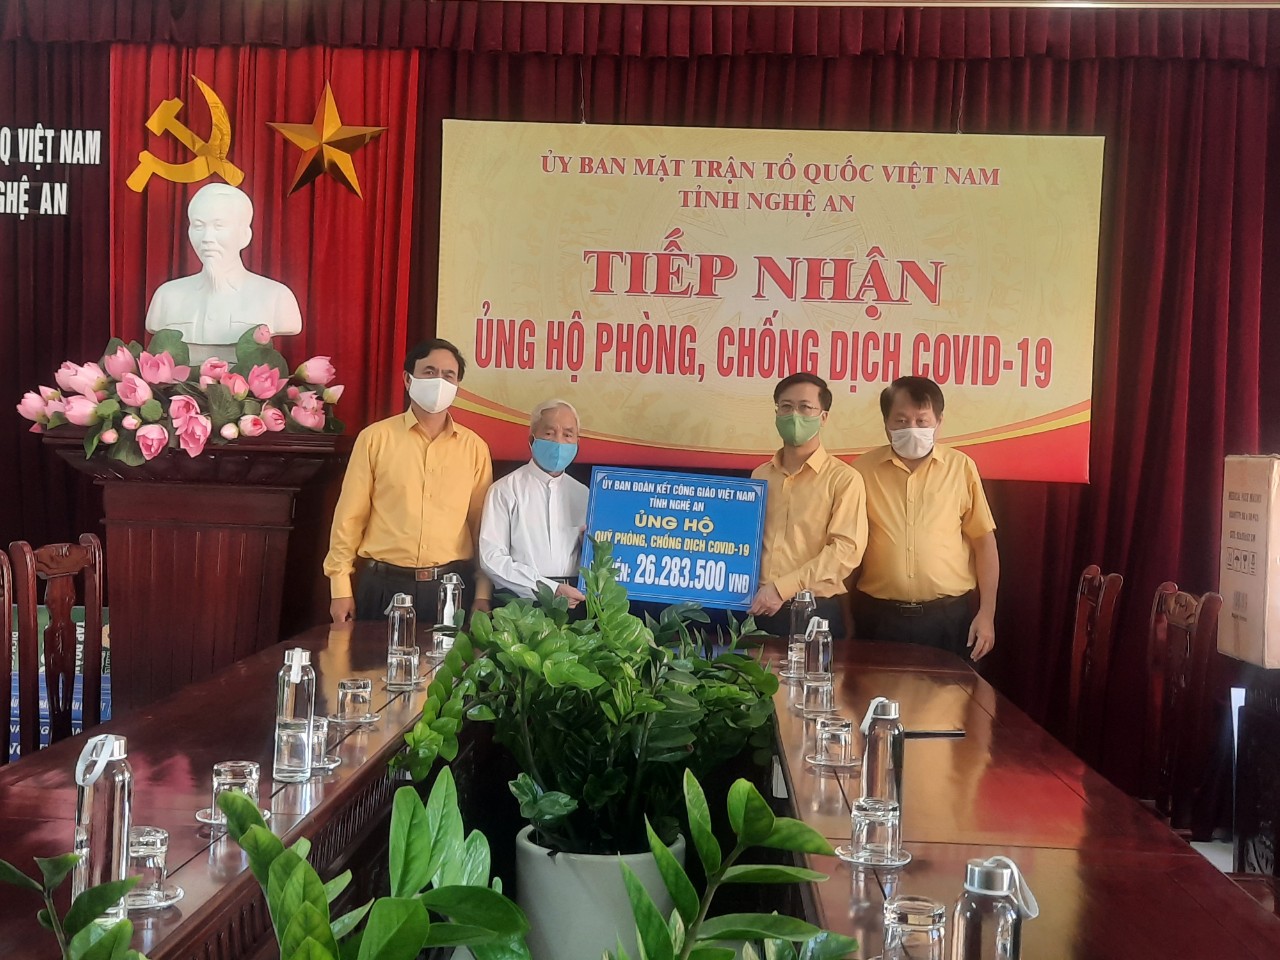 linh mục Giuse Nguyễn Đăng Điền, Chủ tịch Ủy ban Đoàn kết Công giáo Việt Nam tỉnh Nghệ An cùng đoàn đã đến trao tiền ủng hộ công tác phòng, chống dịch Covid-19